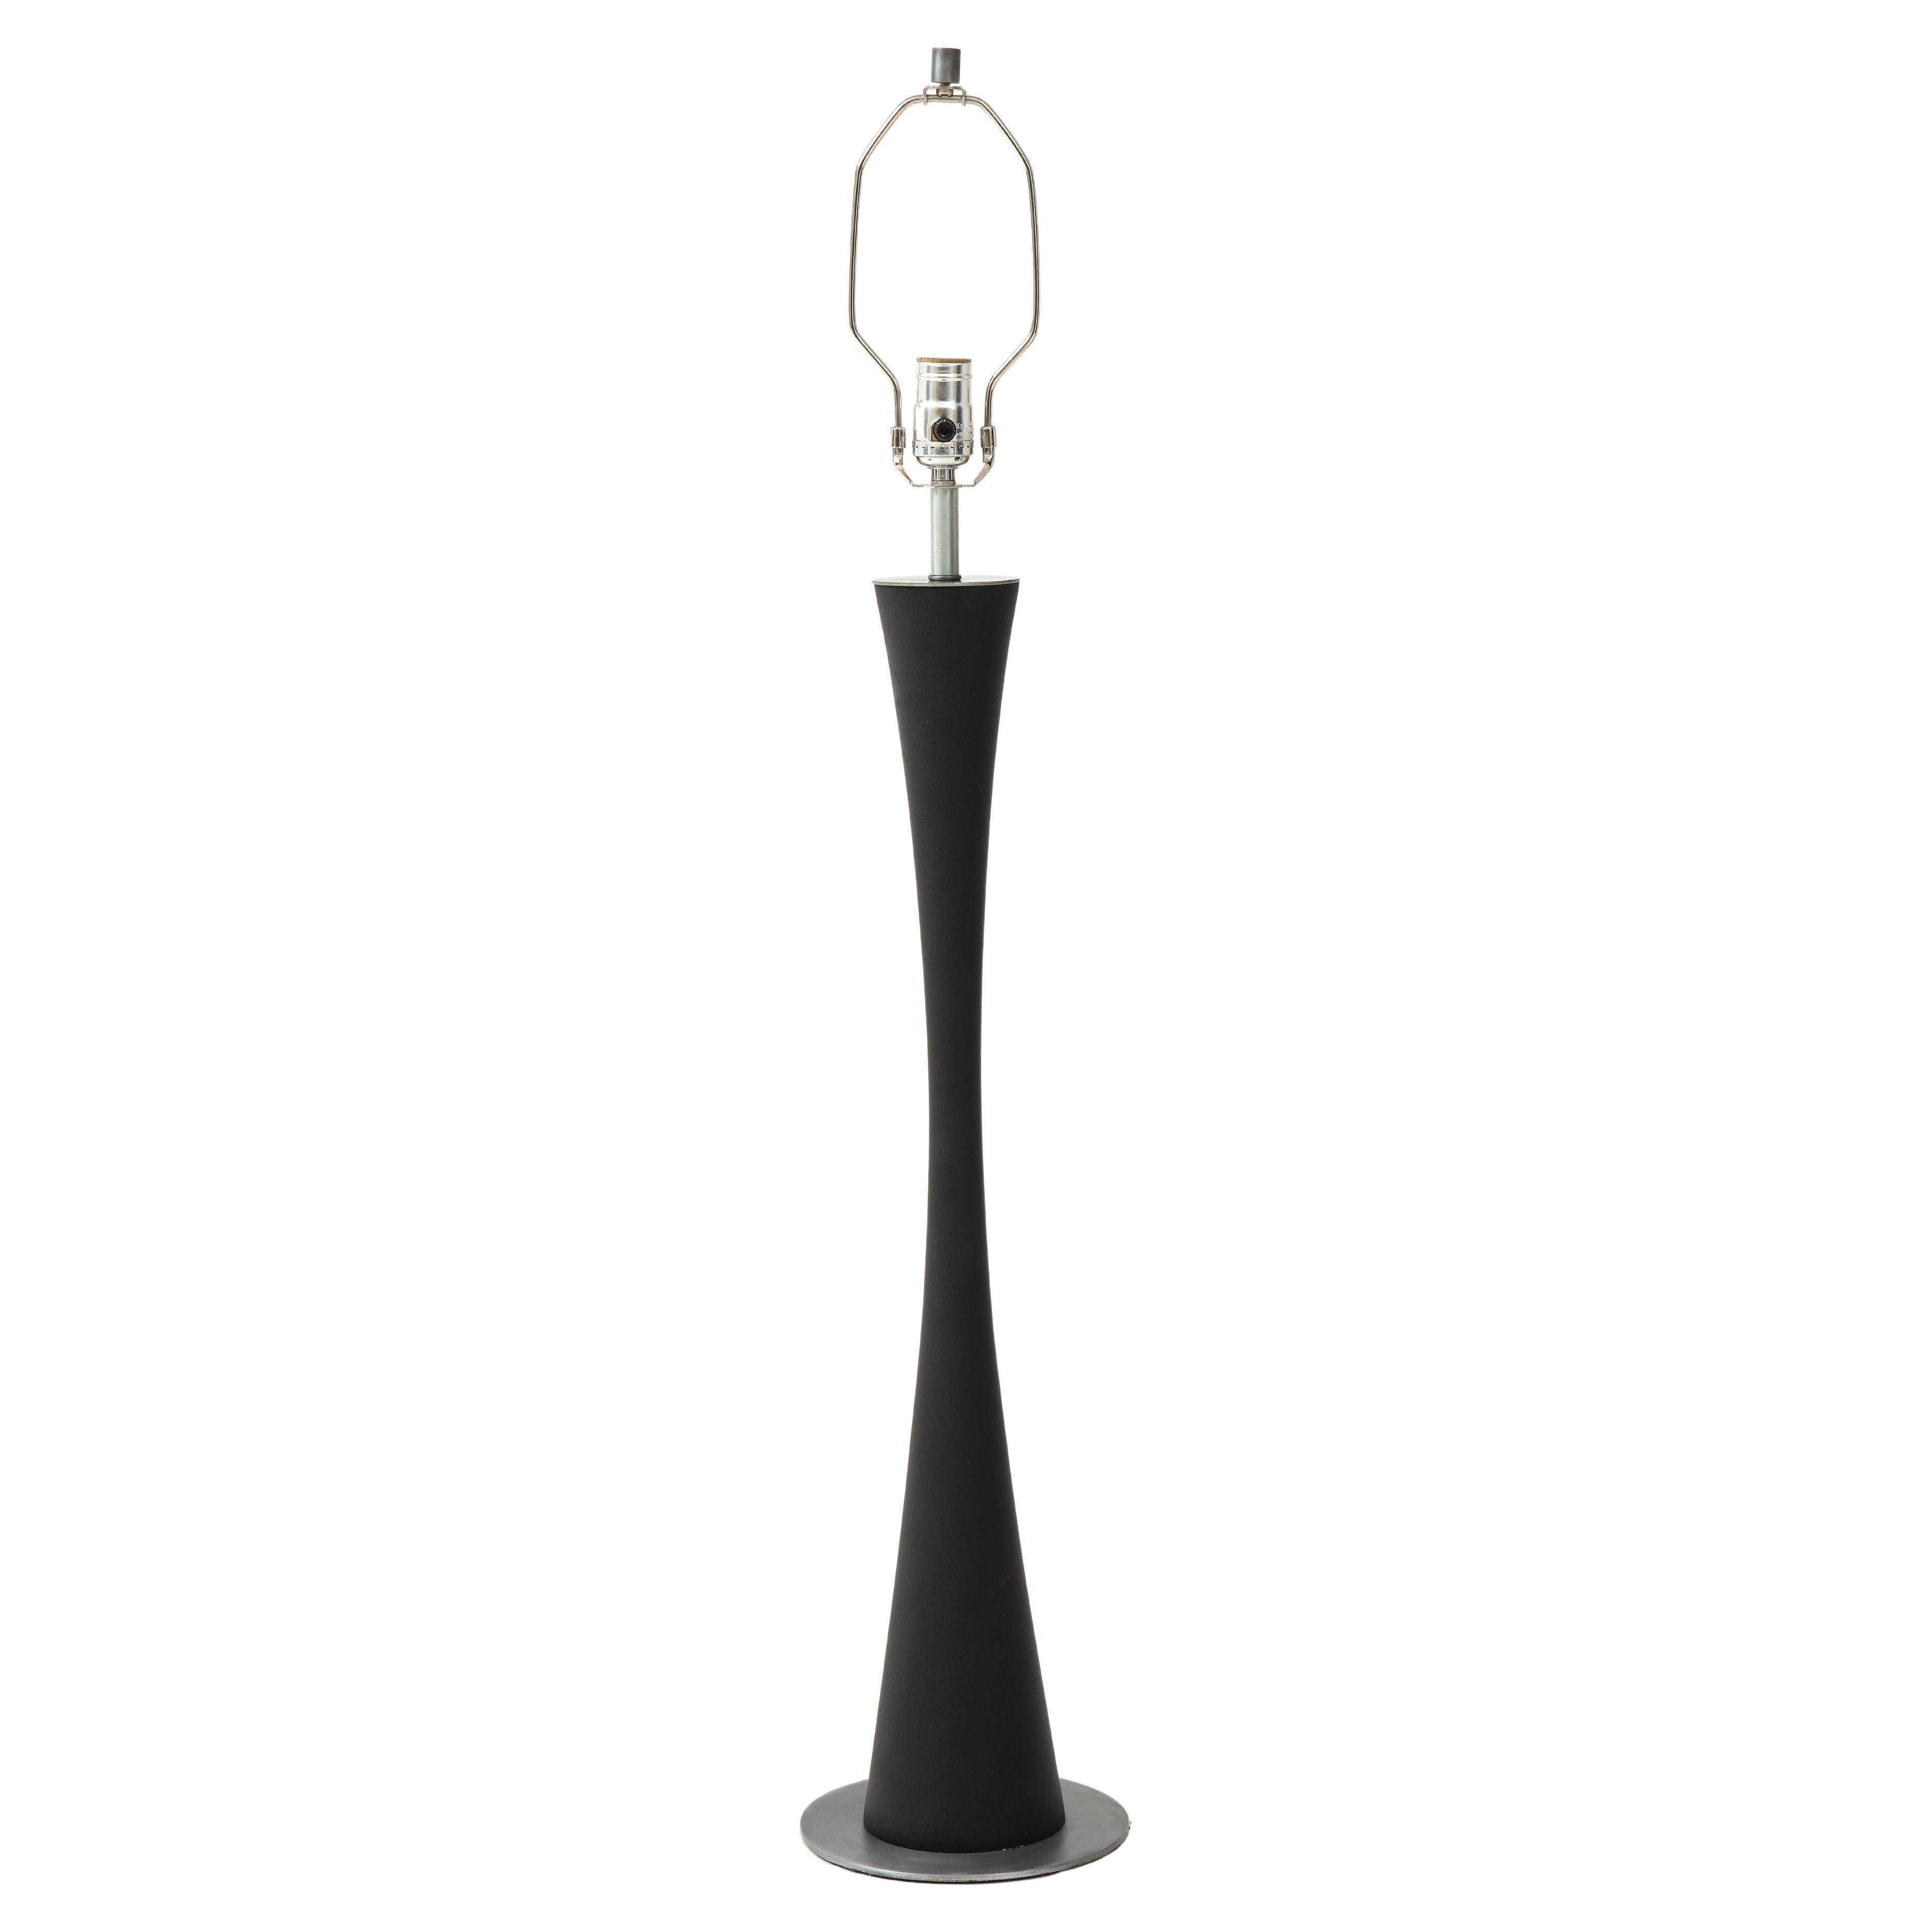 Stewart Ross James for Hansen Modernist Tall Table Lamp